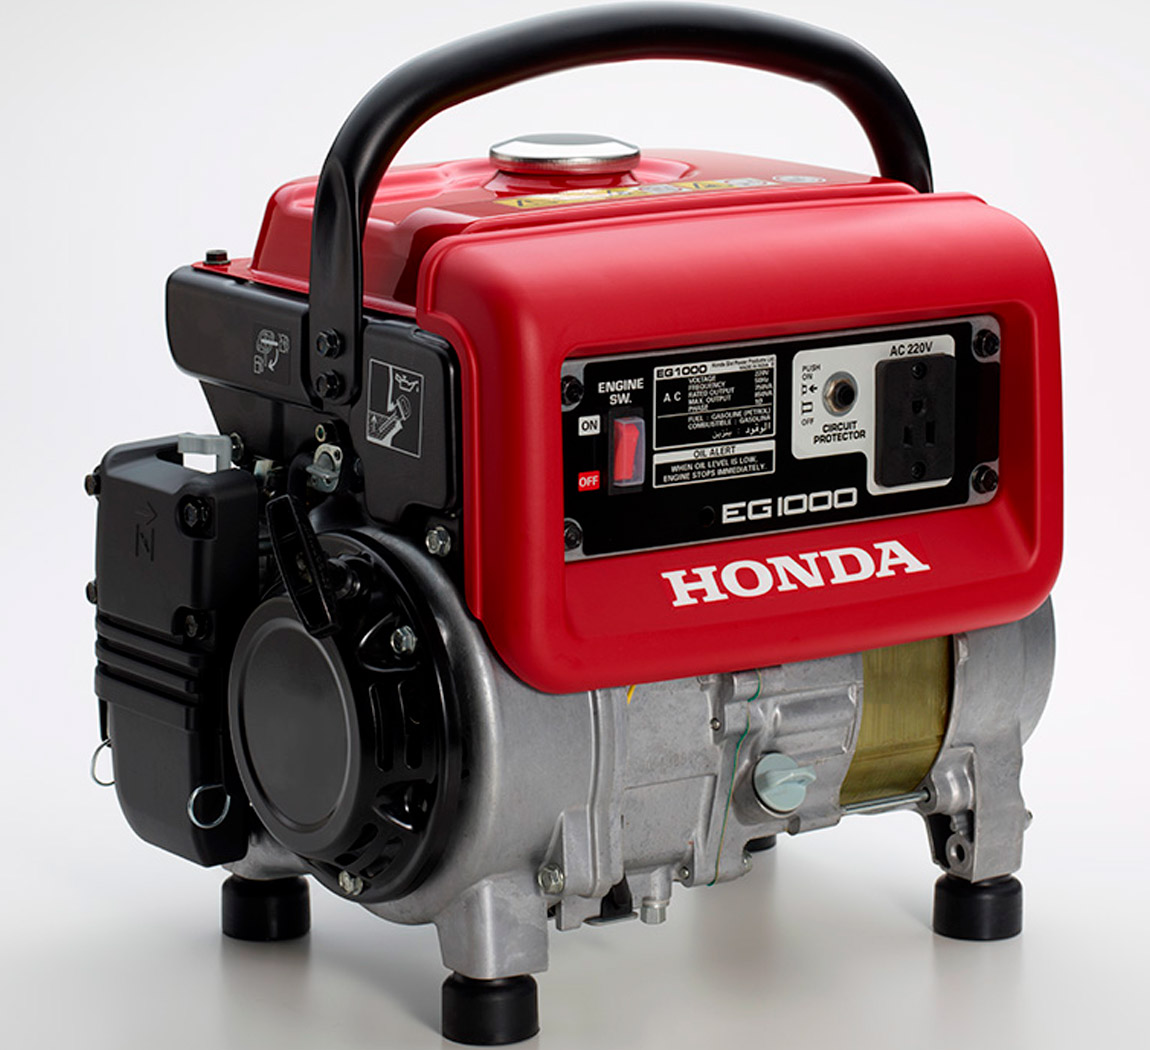 Honda Generador Portátil A Gasolina 1.0 Kw 0.36 Litros